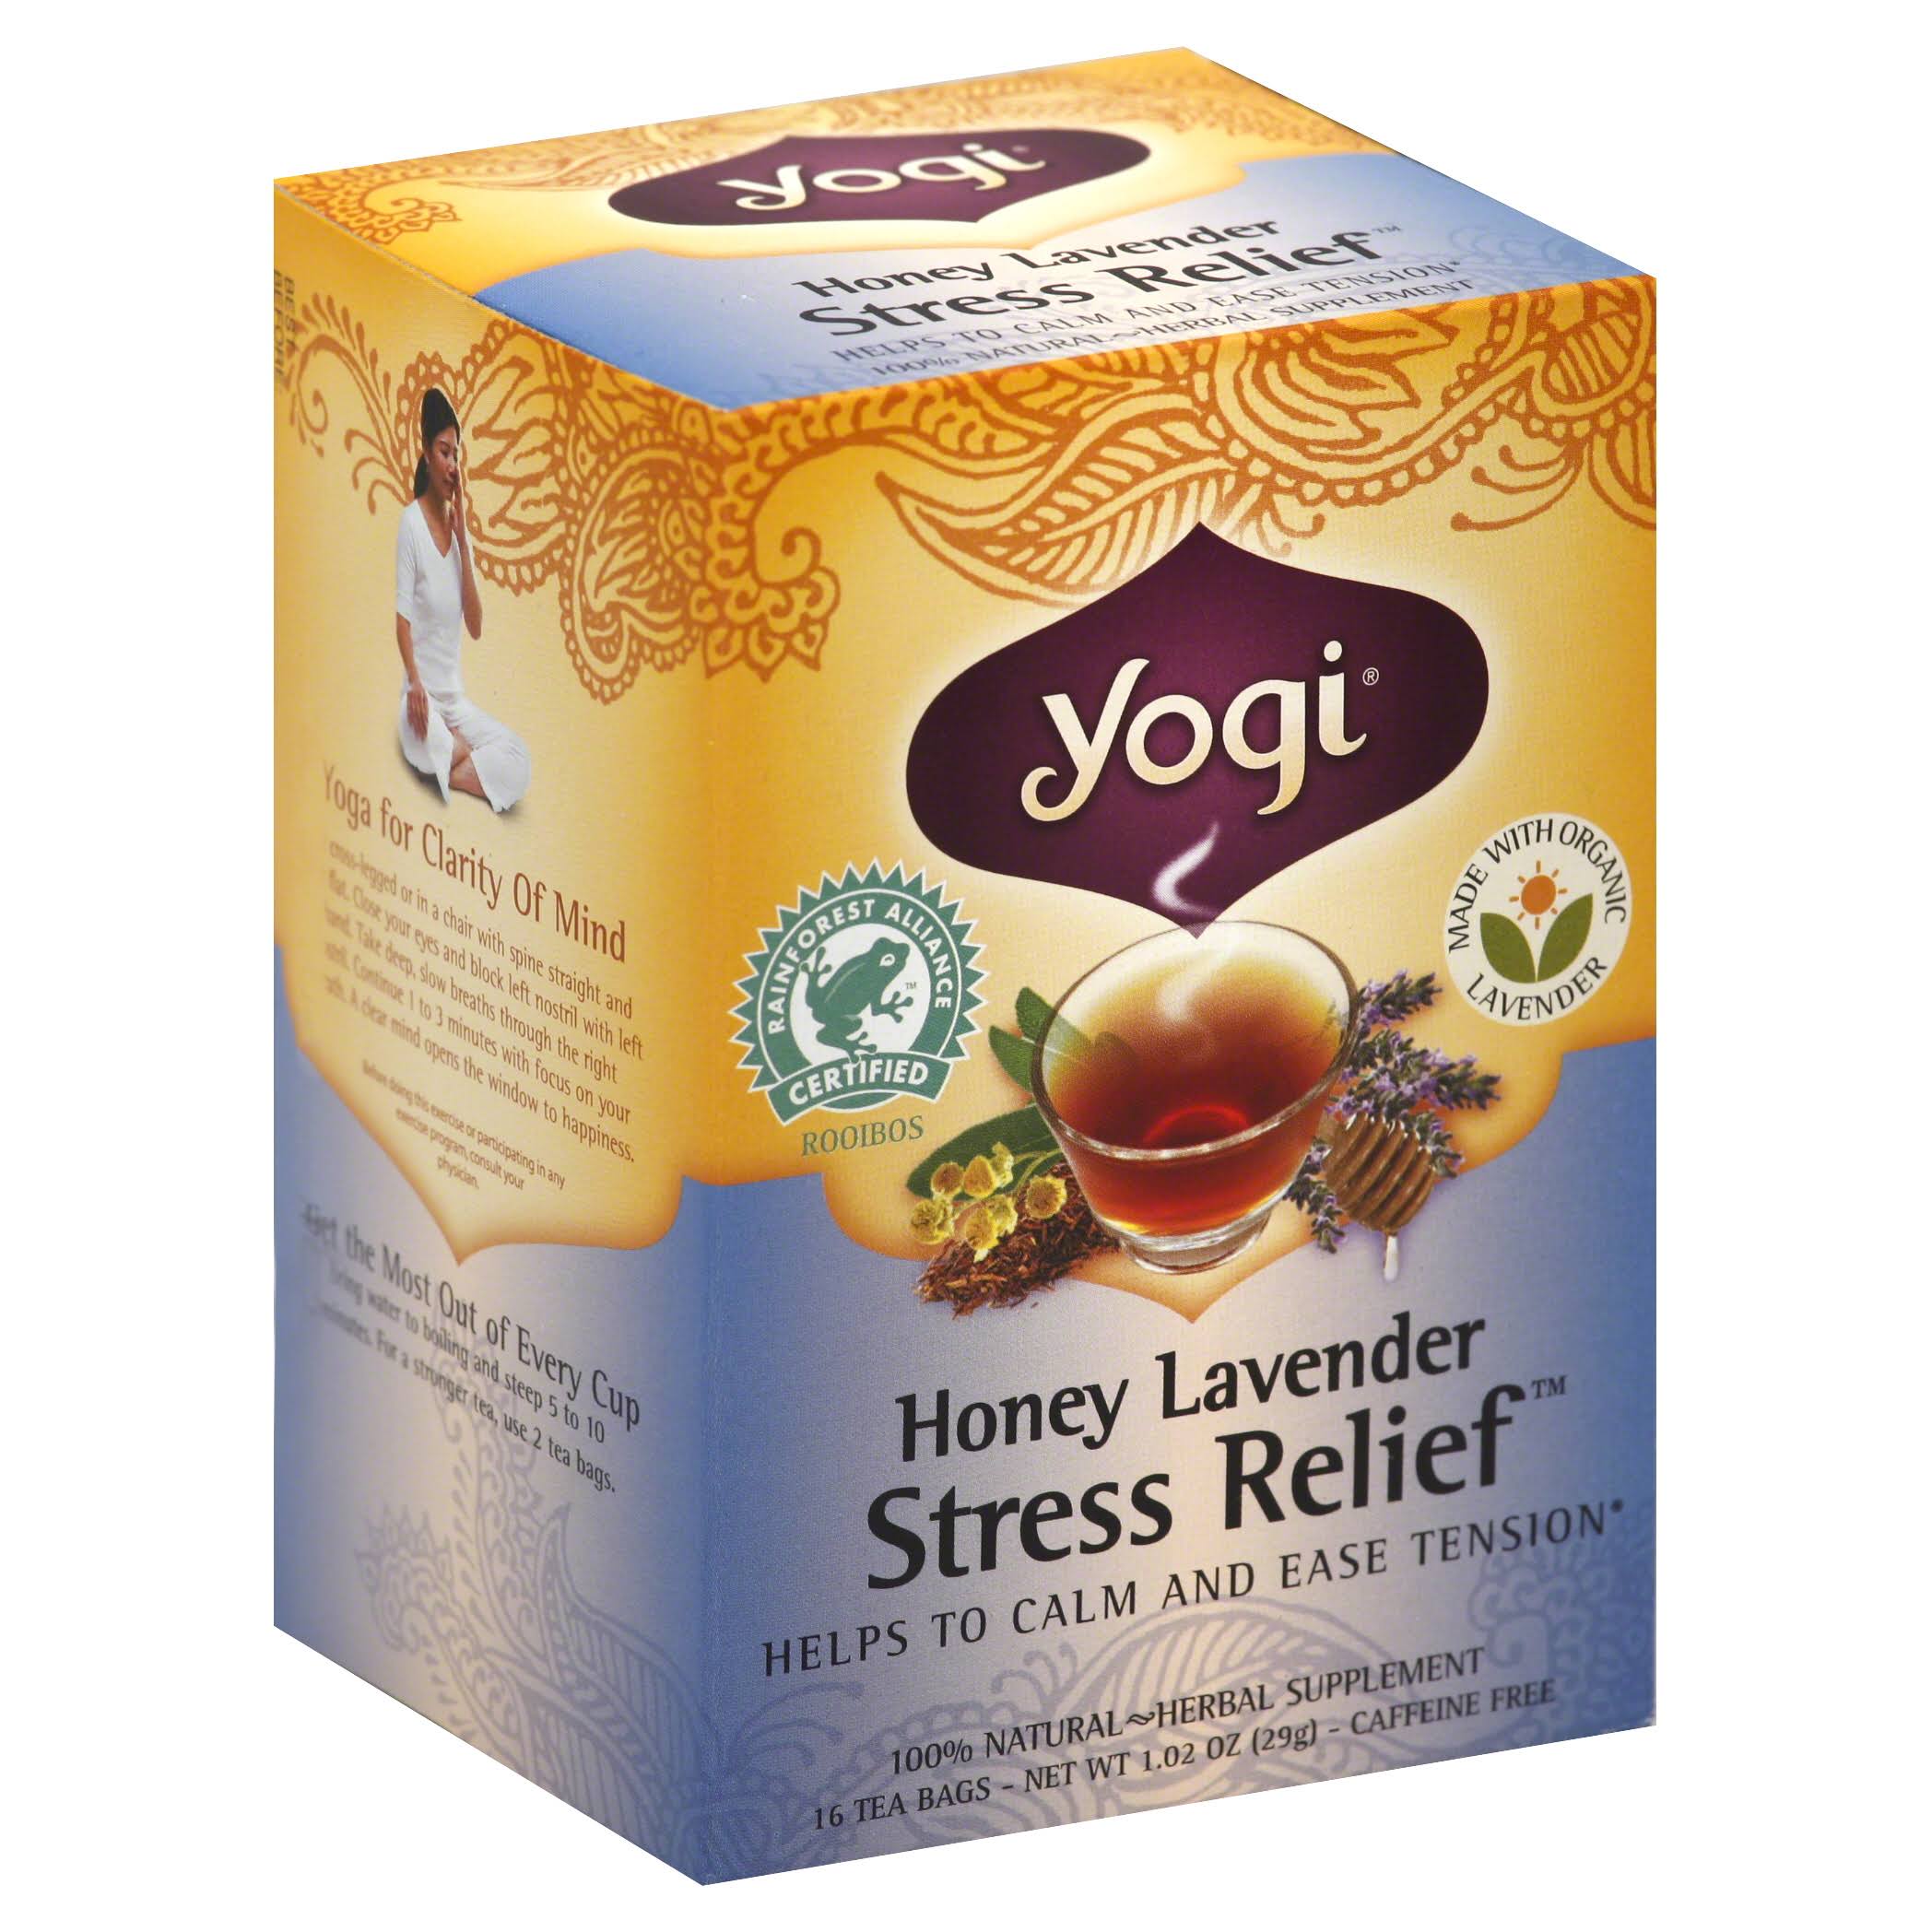 Yogi Stress Relief Honey Lavender Tea Bags - 1.02oz, 16ct